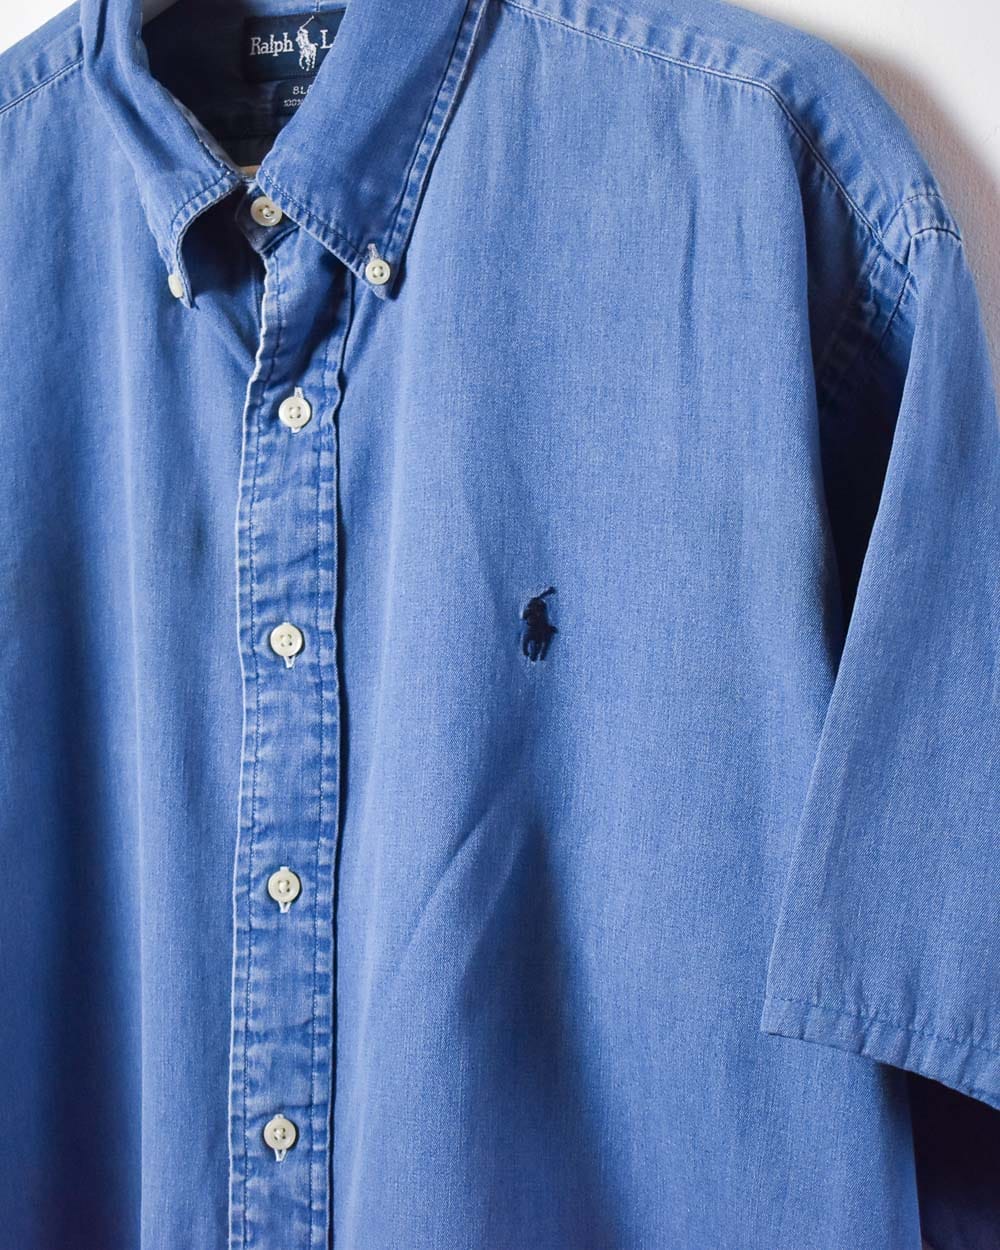 Blue Polo Ralph Lauren Denim Short Sleeved Shirt - X-Large